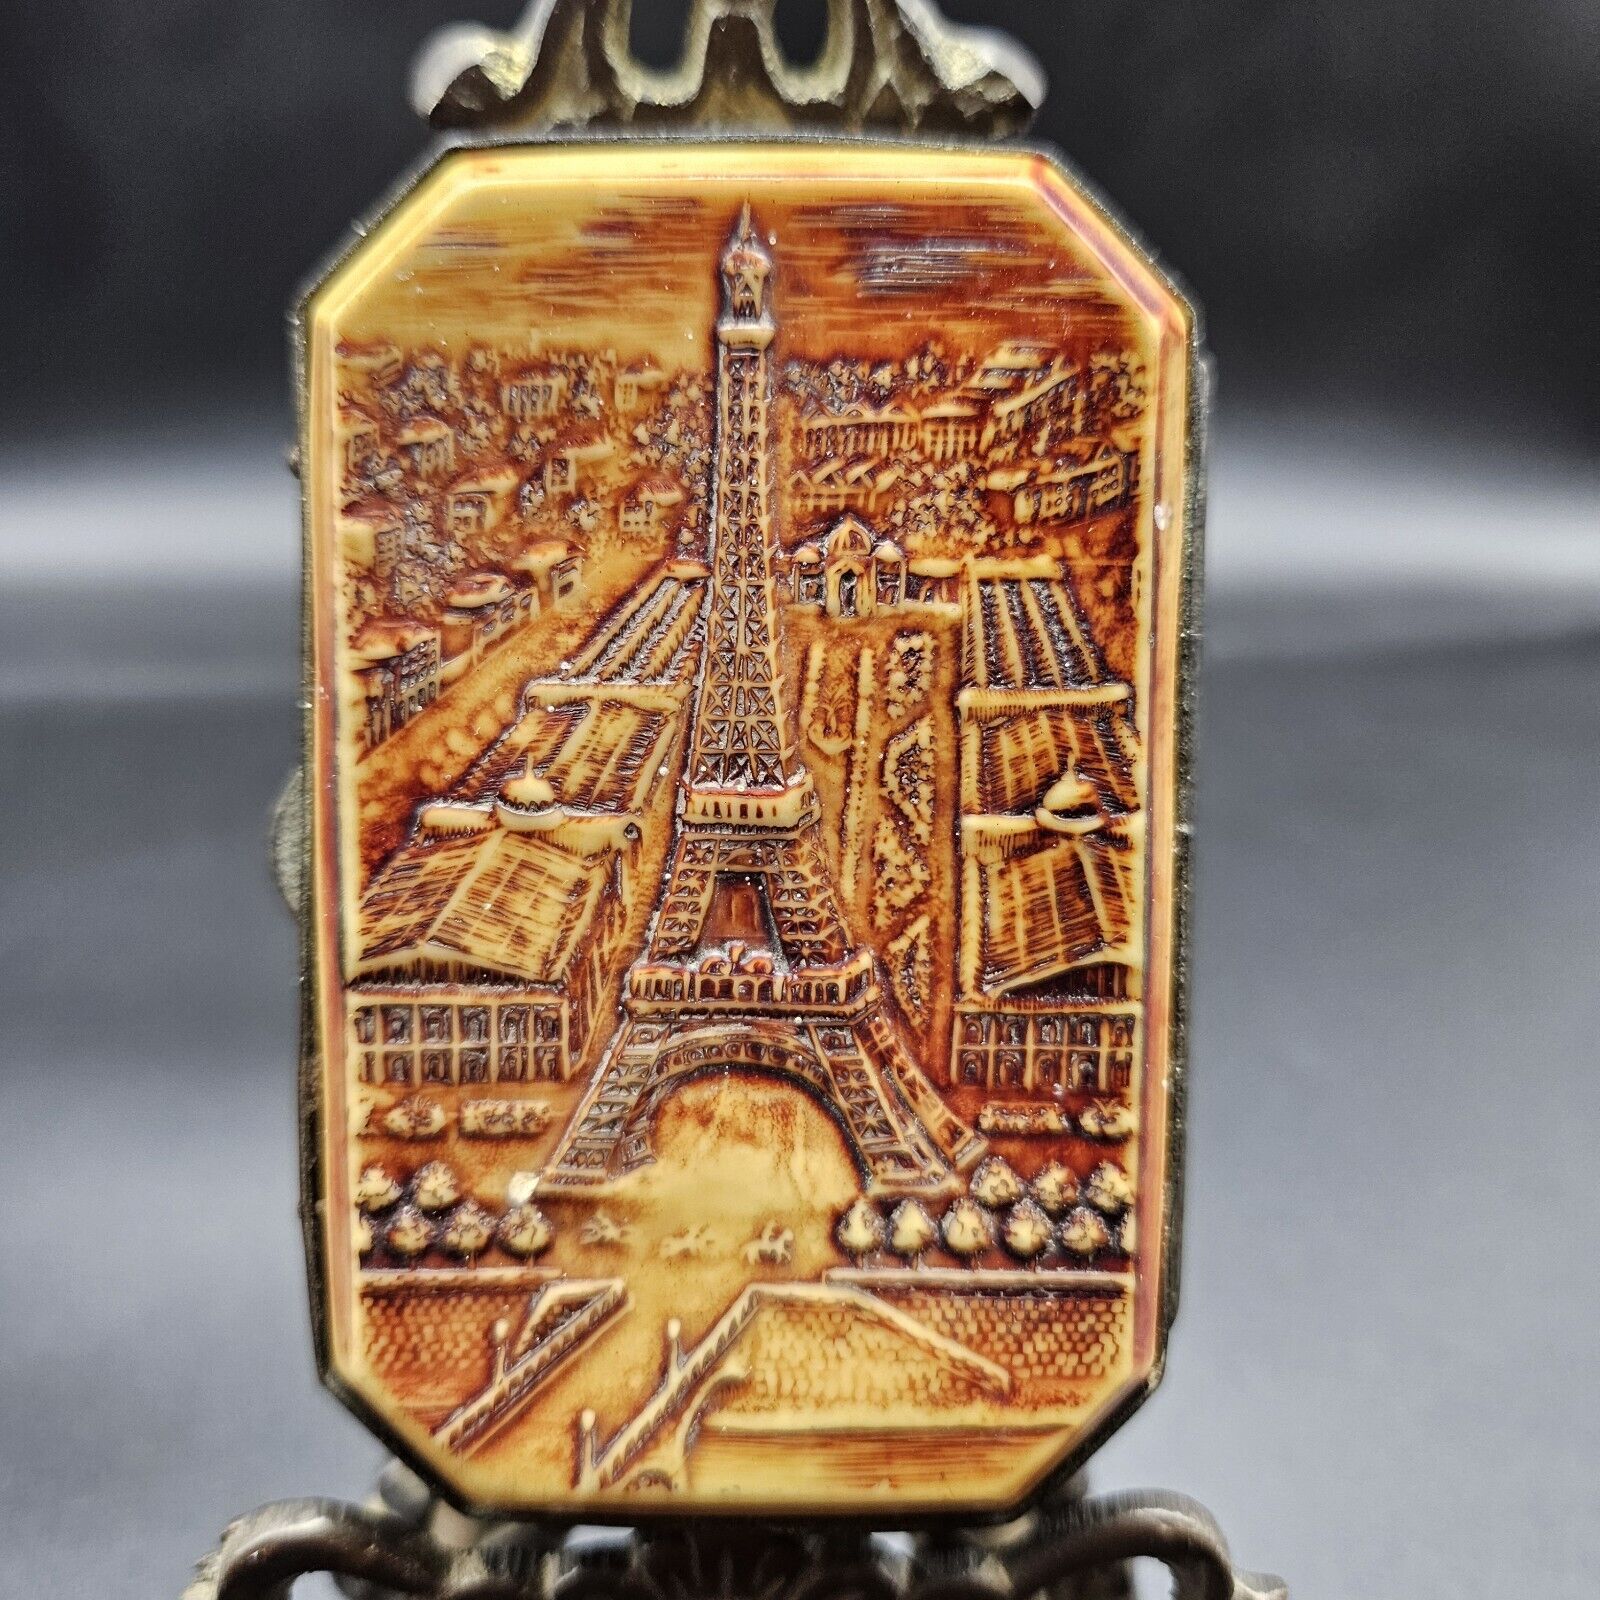 Exposition universelle de Paris 1889. Tour Eiffel Tower Souvenir Cigarette Case